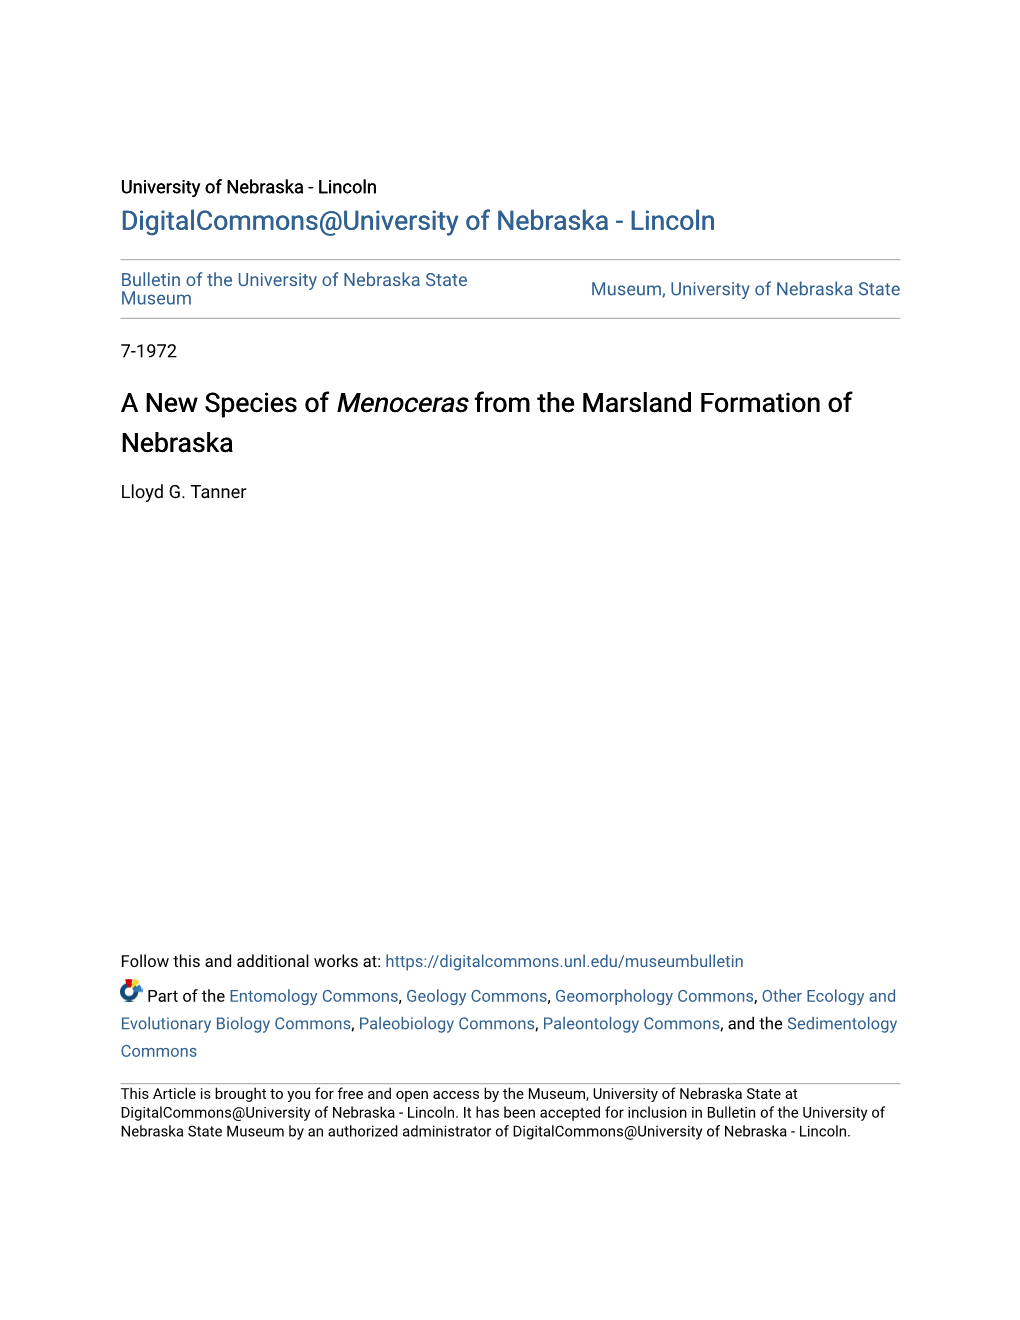 A New Species of &lt;I&gt;Menoceras&lt;/I&gt; from the Marsland Formation of Nebraska